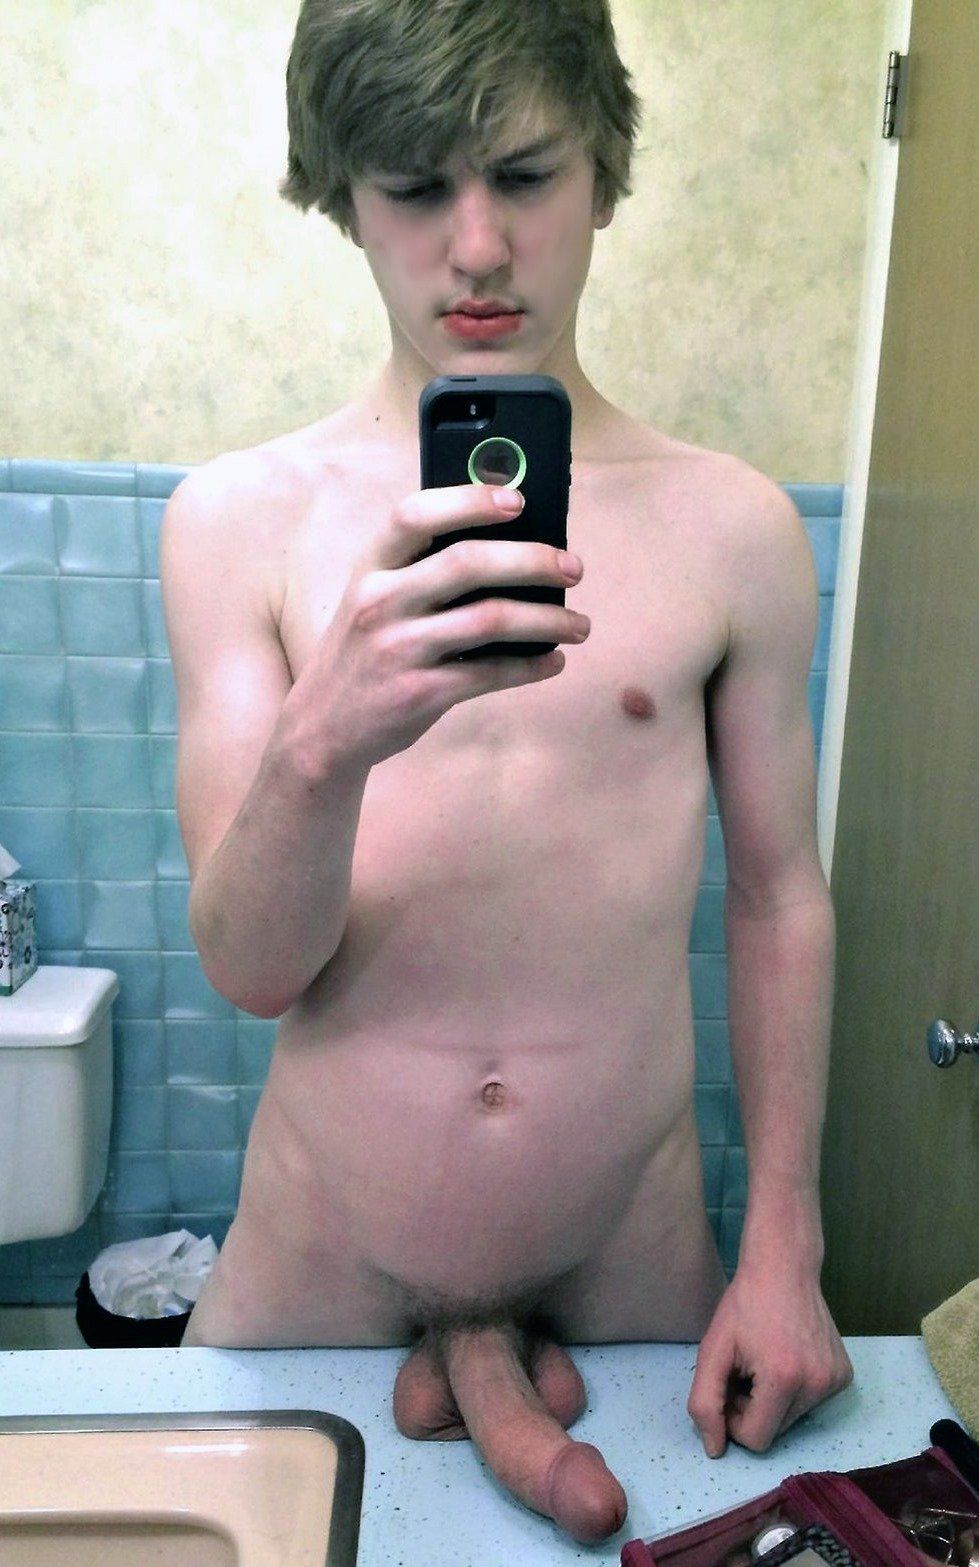 Male amatuer selfie nude